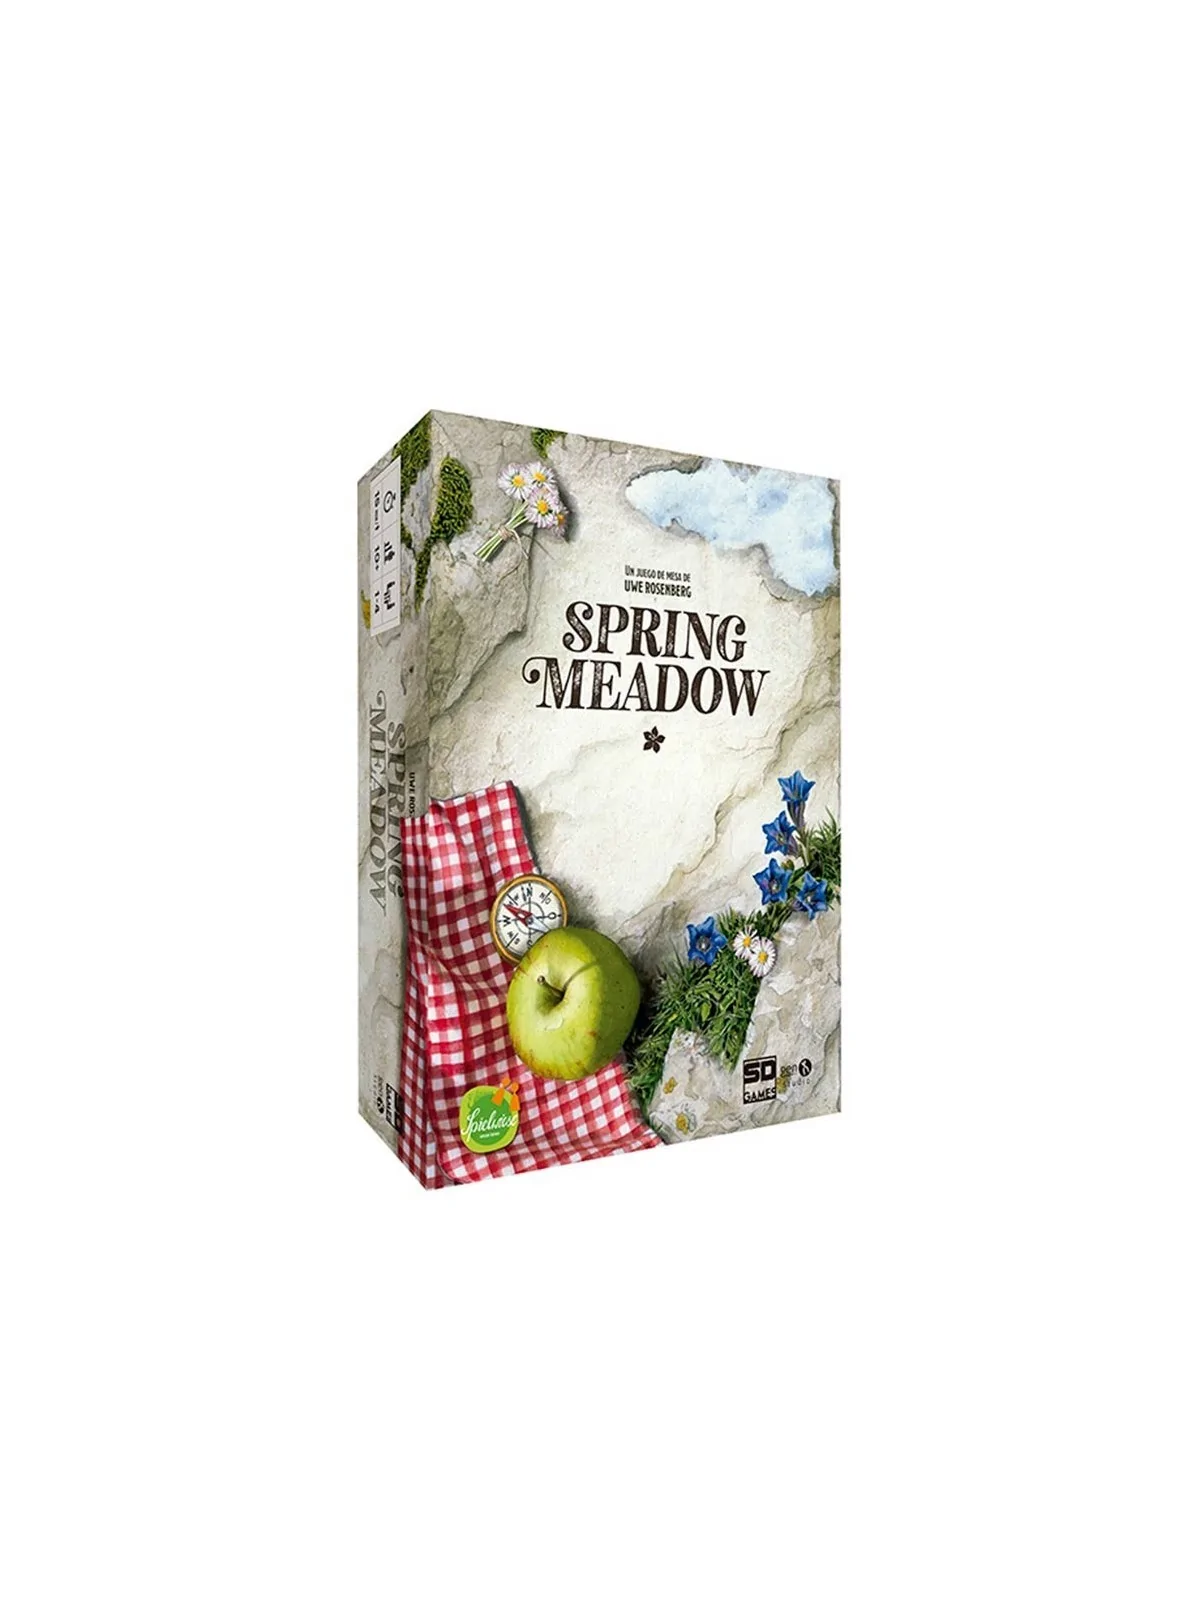 Comprar Spring Meadow barato al mejor precio 32,36 € de SD GAMES